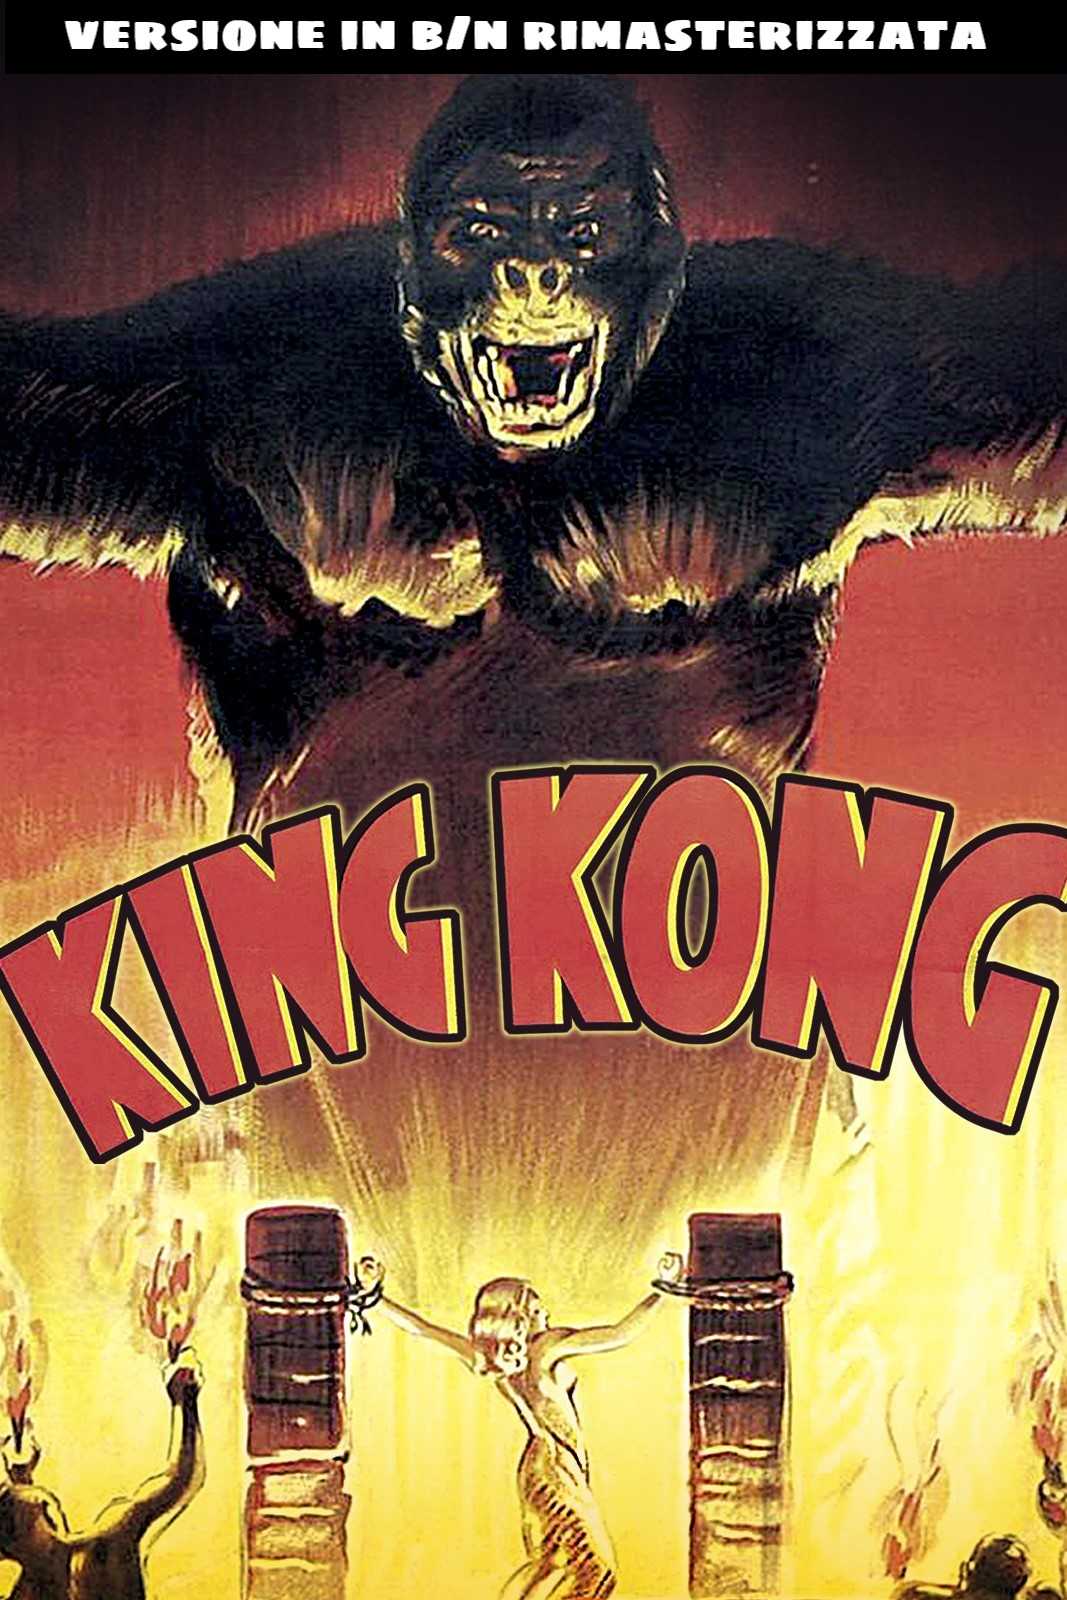 King Kong [B/N] in streaming